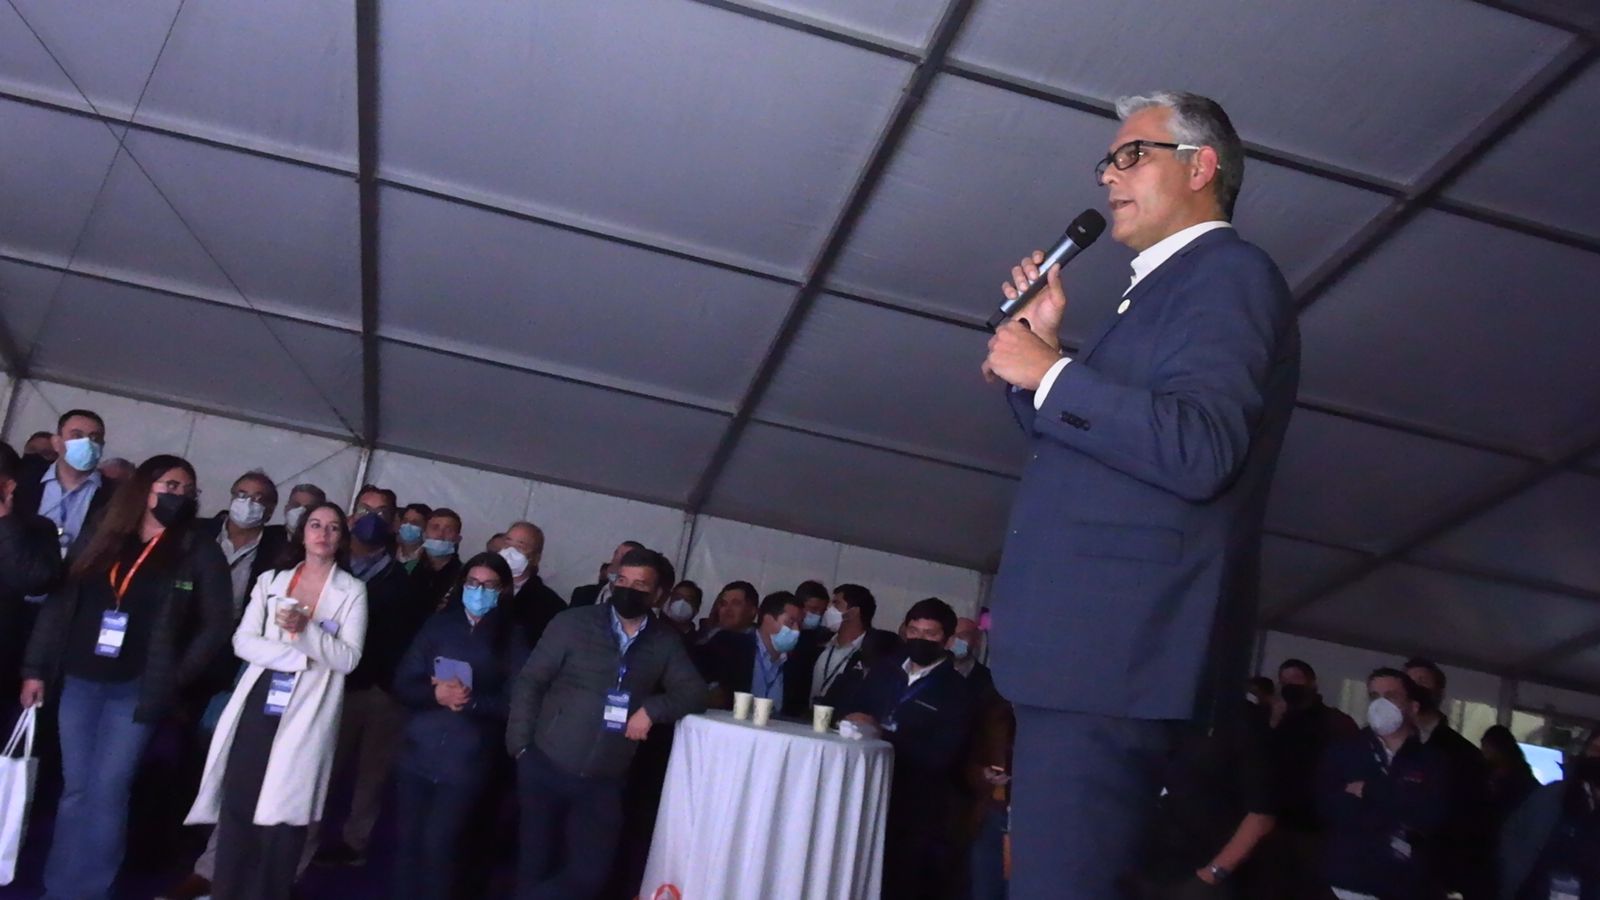 Antofagasta Minerals finaliza su participación en Exponor 2022 con más de 300 reuniones con proveedores 